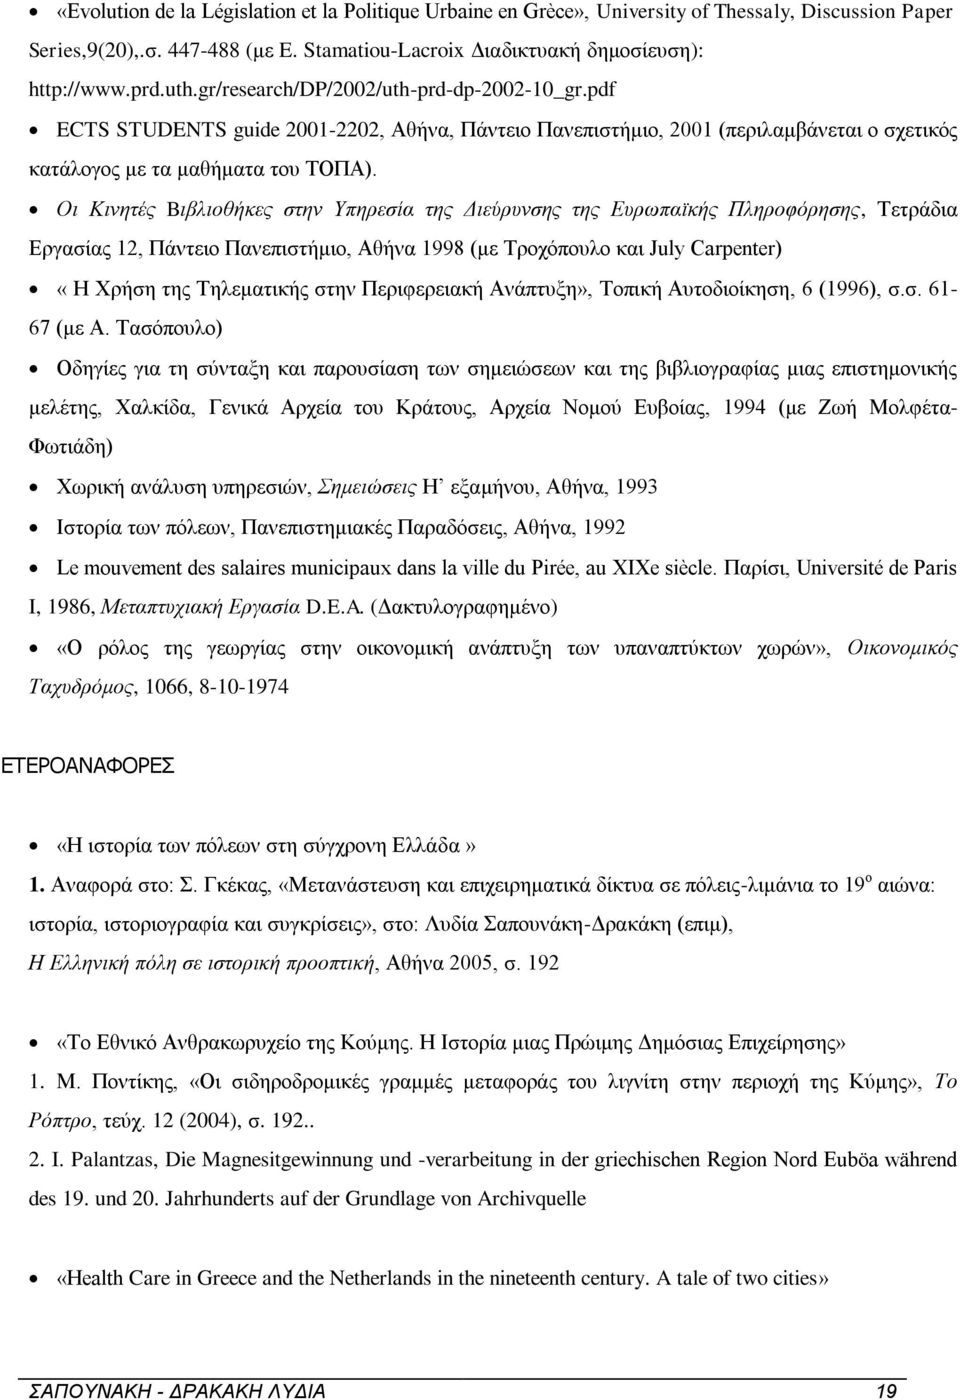 Οι Kινητές Bιβλιοθήκες στην Yπηρεσία της Διεύρυνσης της Ευρωπαϊκής Πληροφόρησης, Τετράδια Εργασίας 12, Πάντειο Πανεπιστήμιο, Αθήνα 1998 (με Τροχόπουλο και July Carpenter) «Η Χρήση της Τηλεματικής